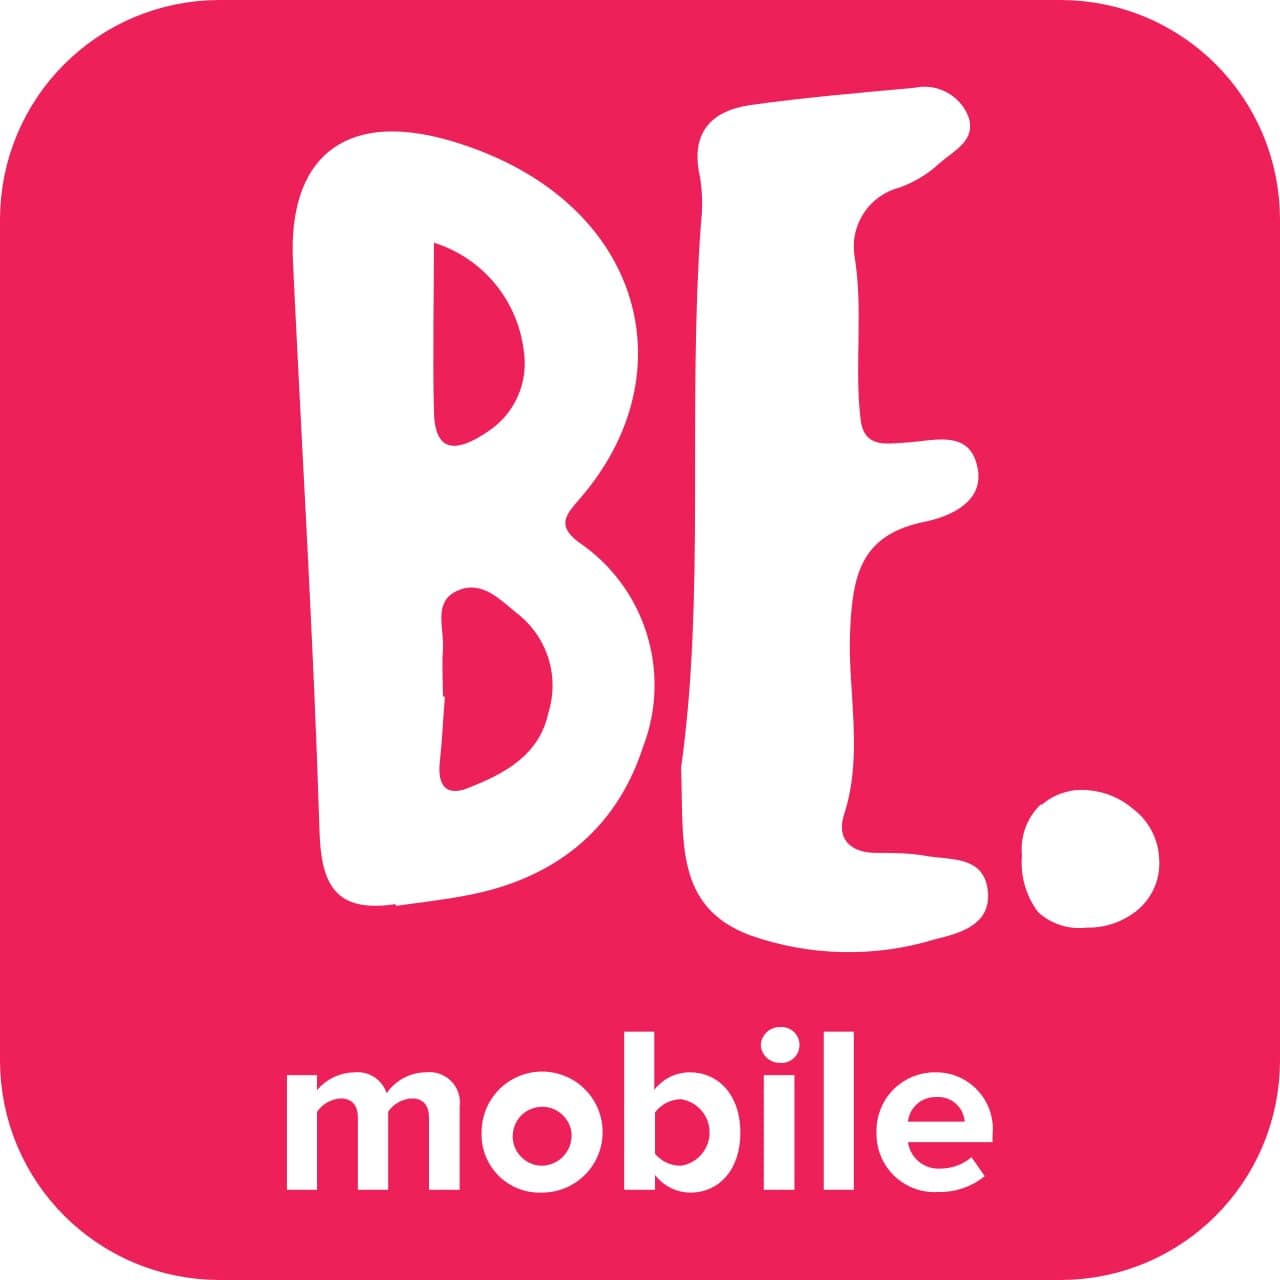 BeMobile App launched in Kenya